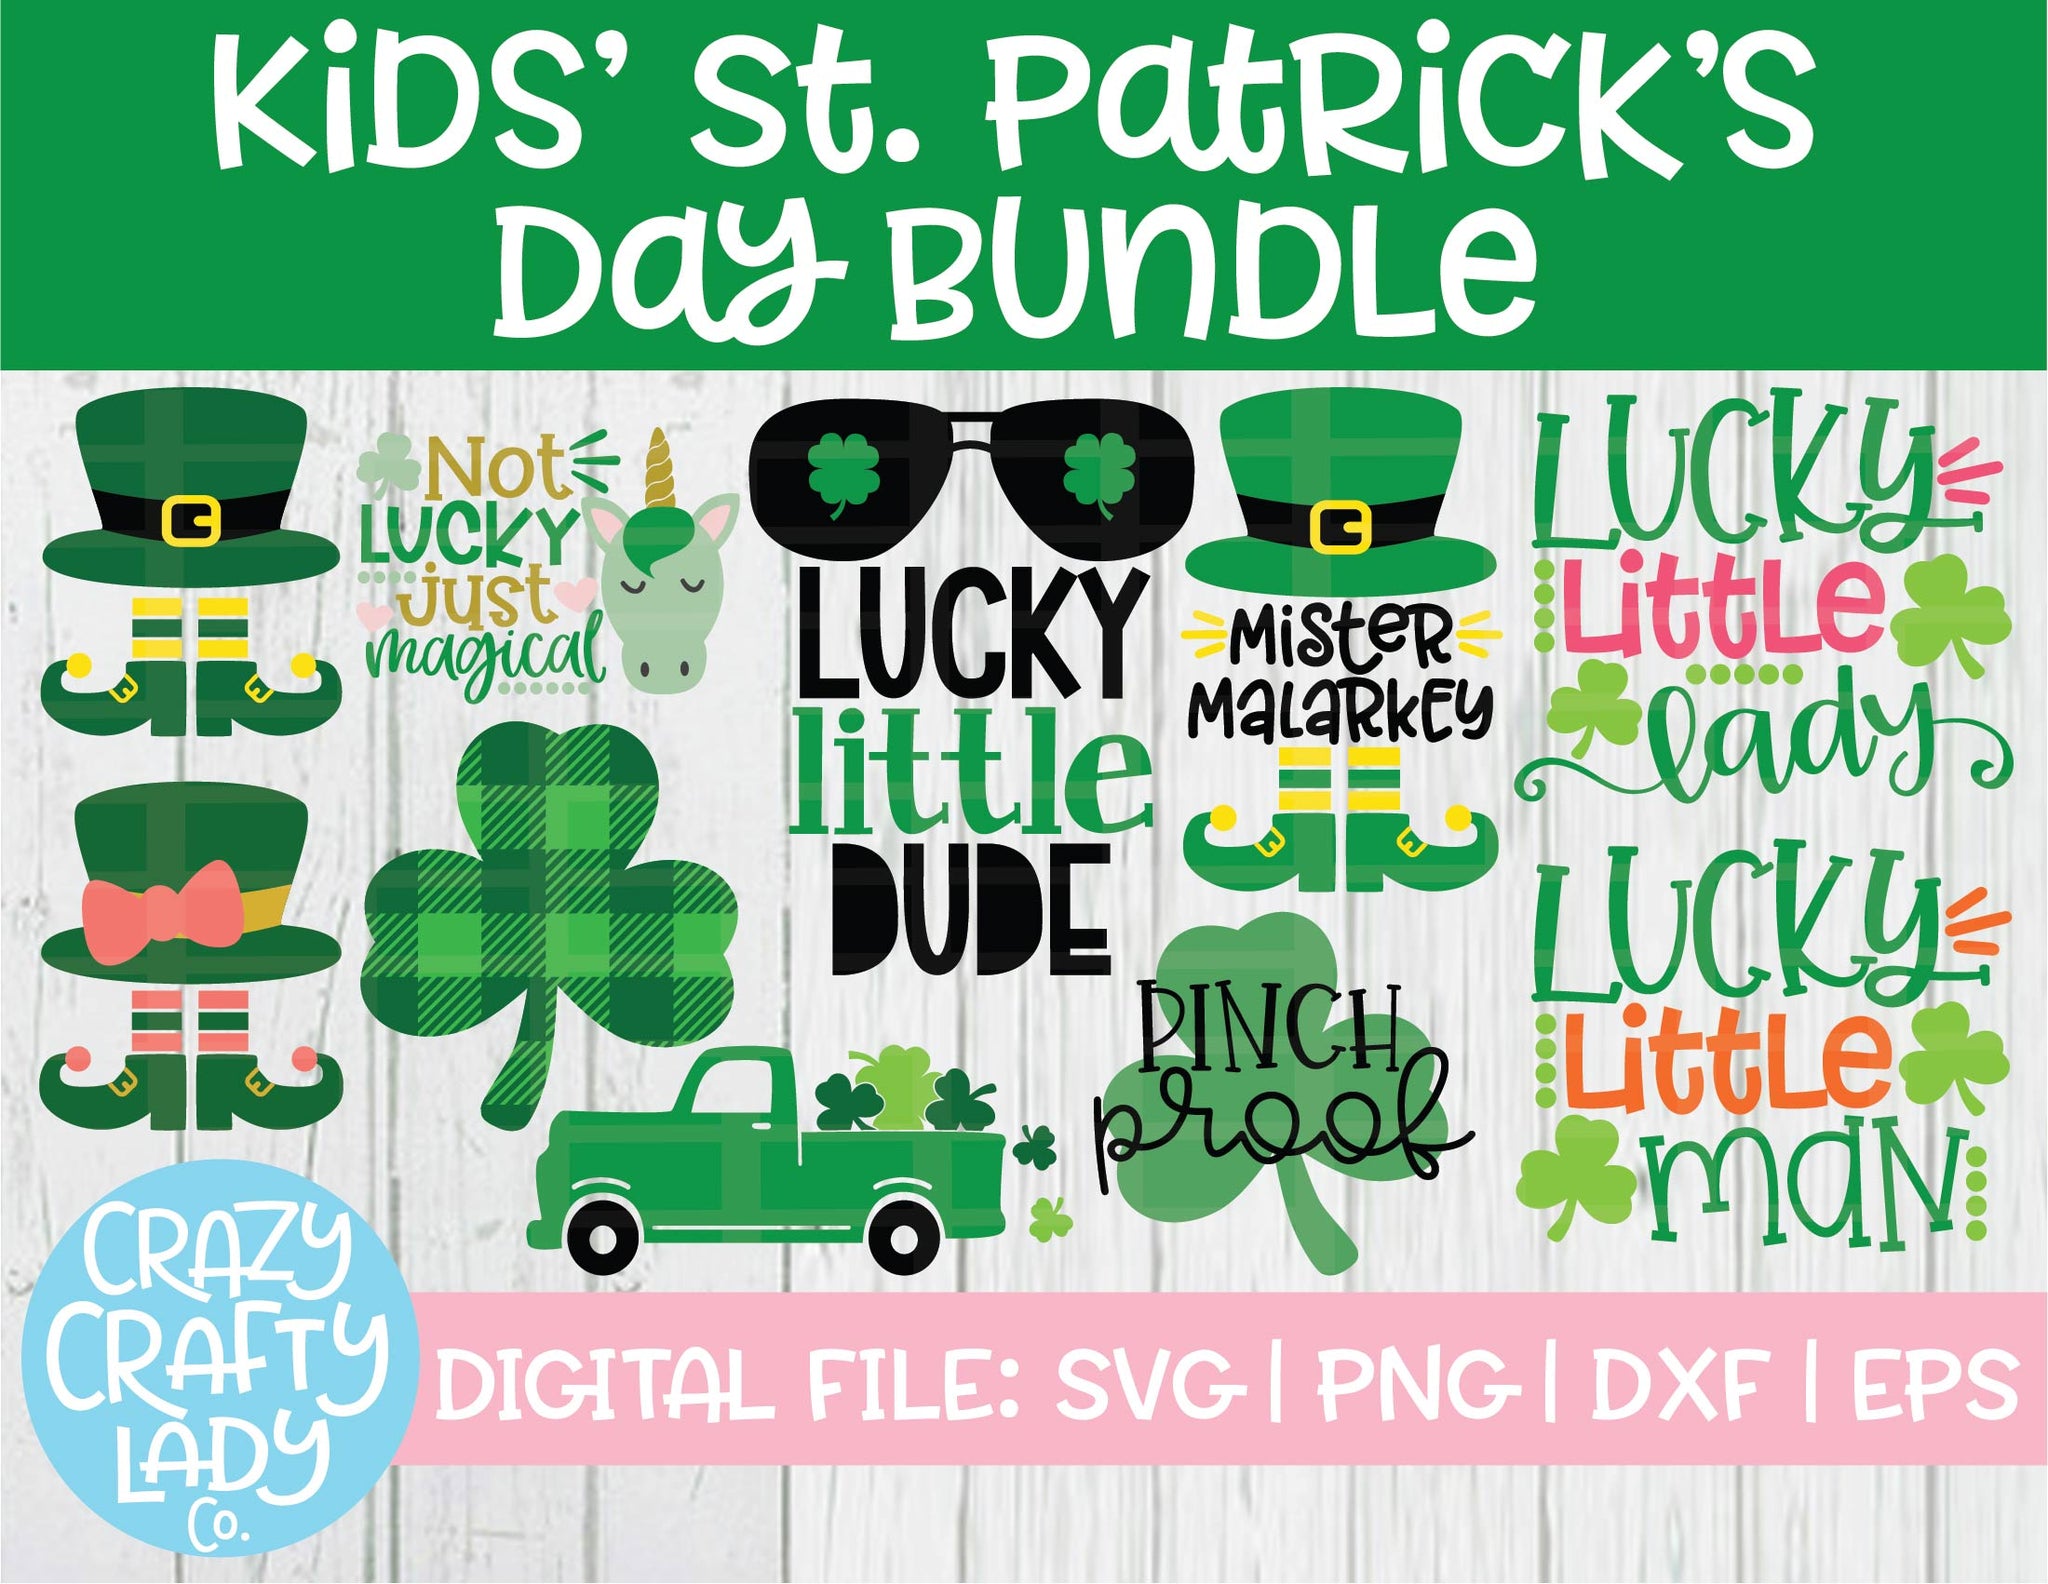 Kids' St. Patrick's Day SVG Cut File Bundle – Crazy Crafty Lady Co.